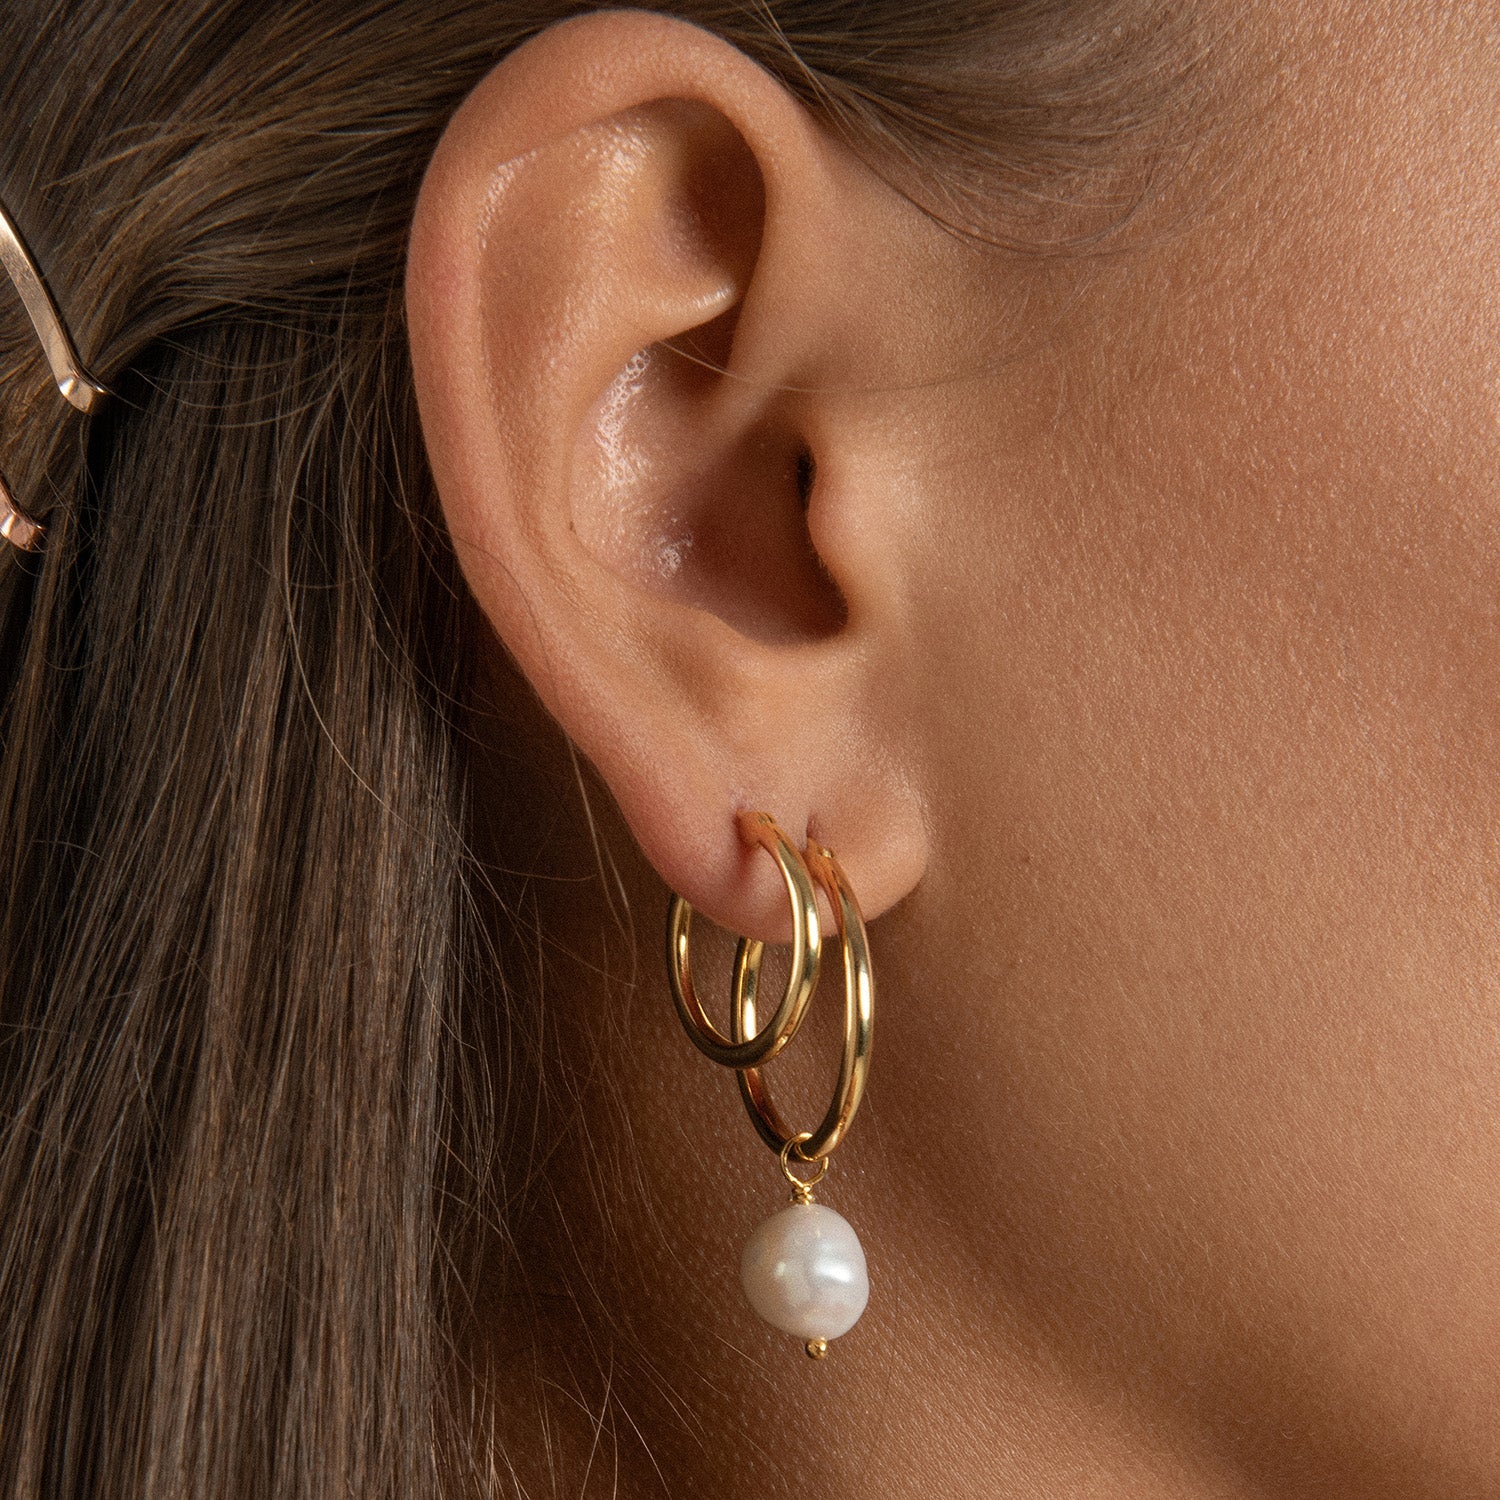 Venus Gold Hoop Earrings with Dark Grey Pearl Charm